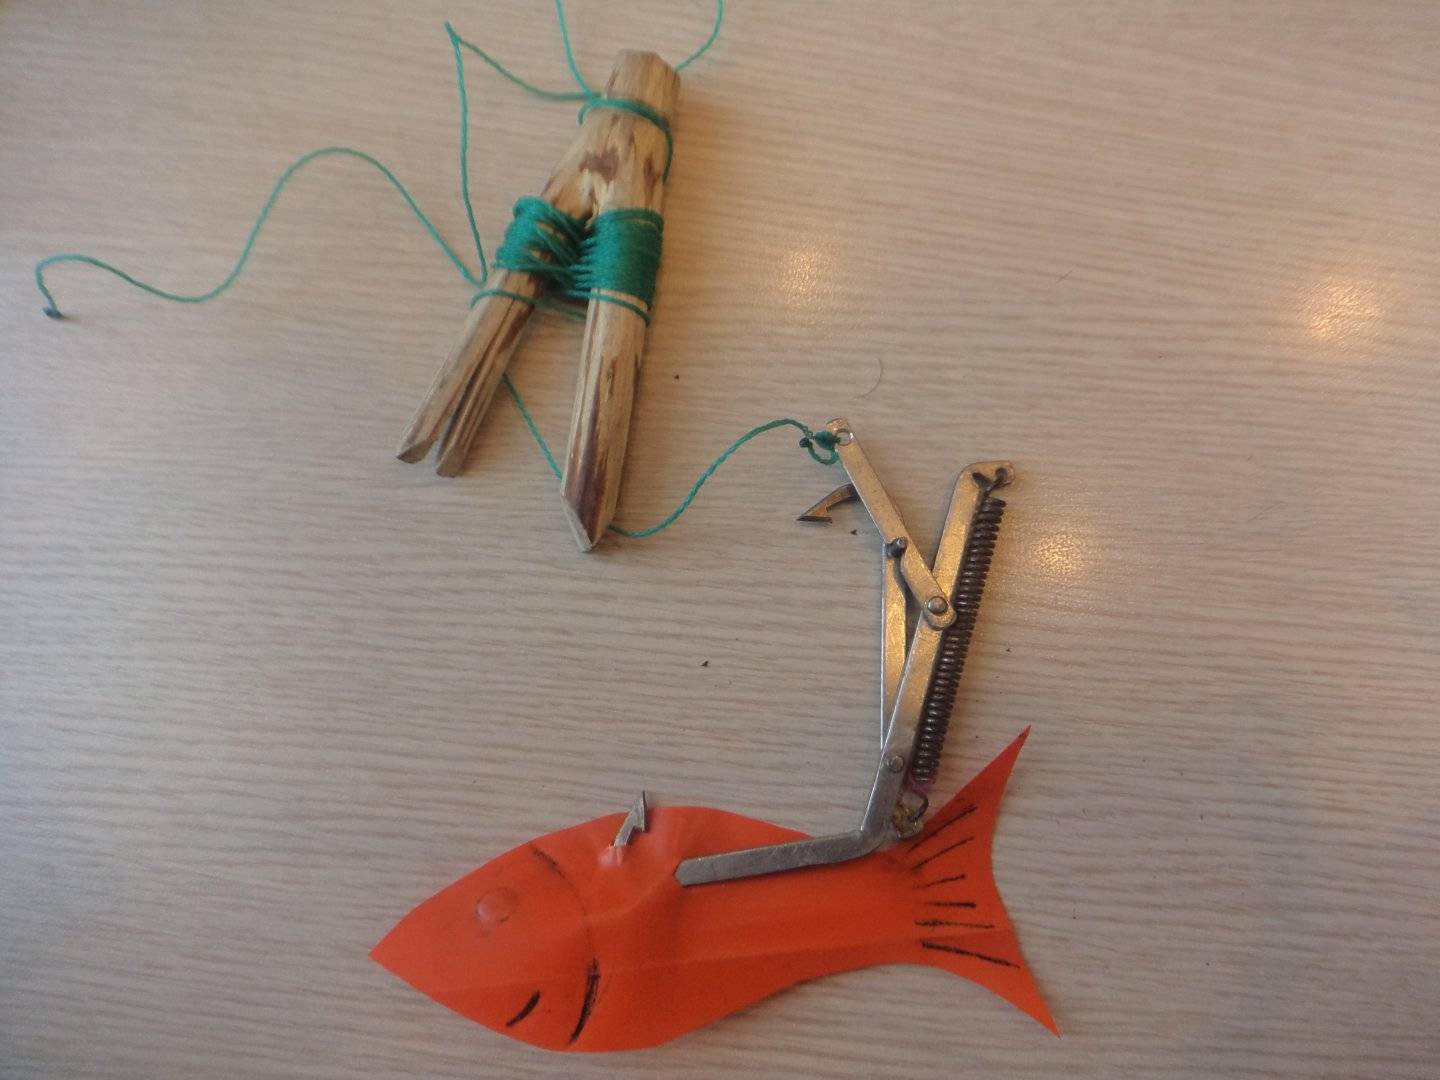 Как правильно насадить живца на одинарный крючок или капкан? – суперулов – интернет-портал о рыбалке